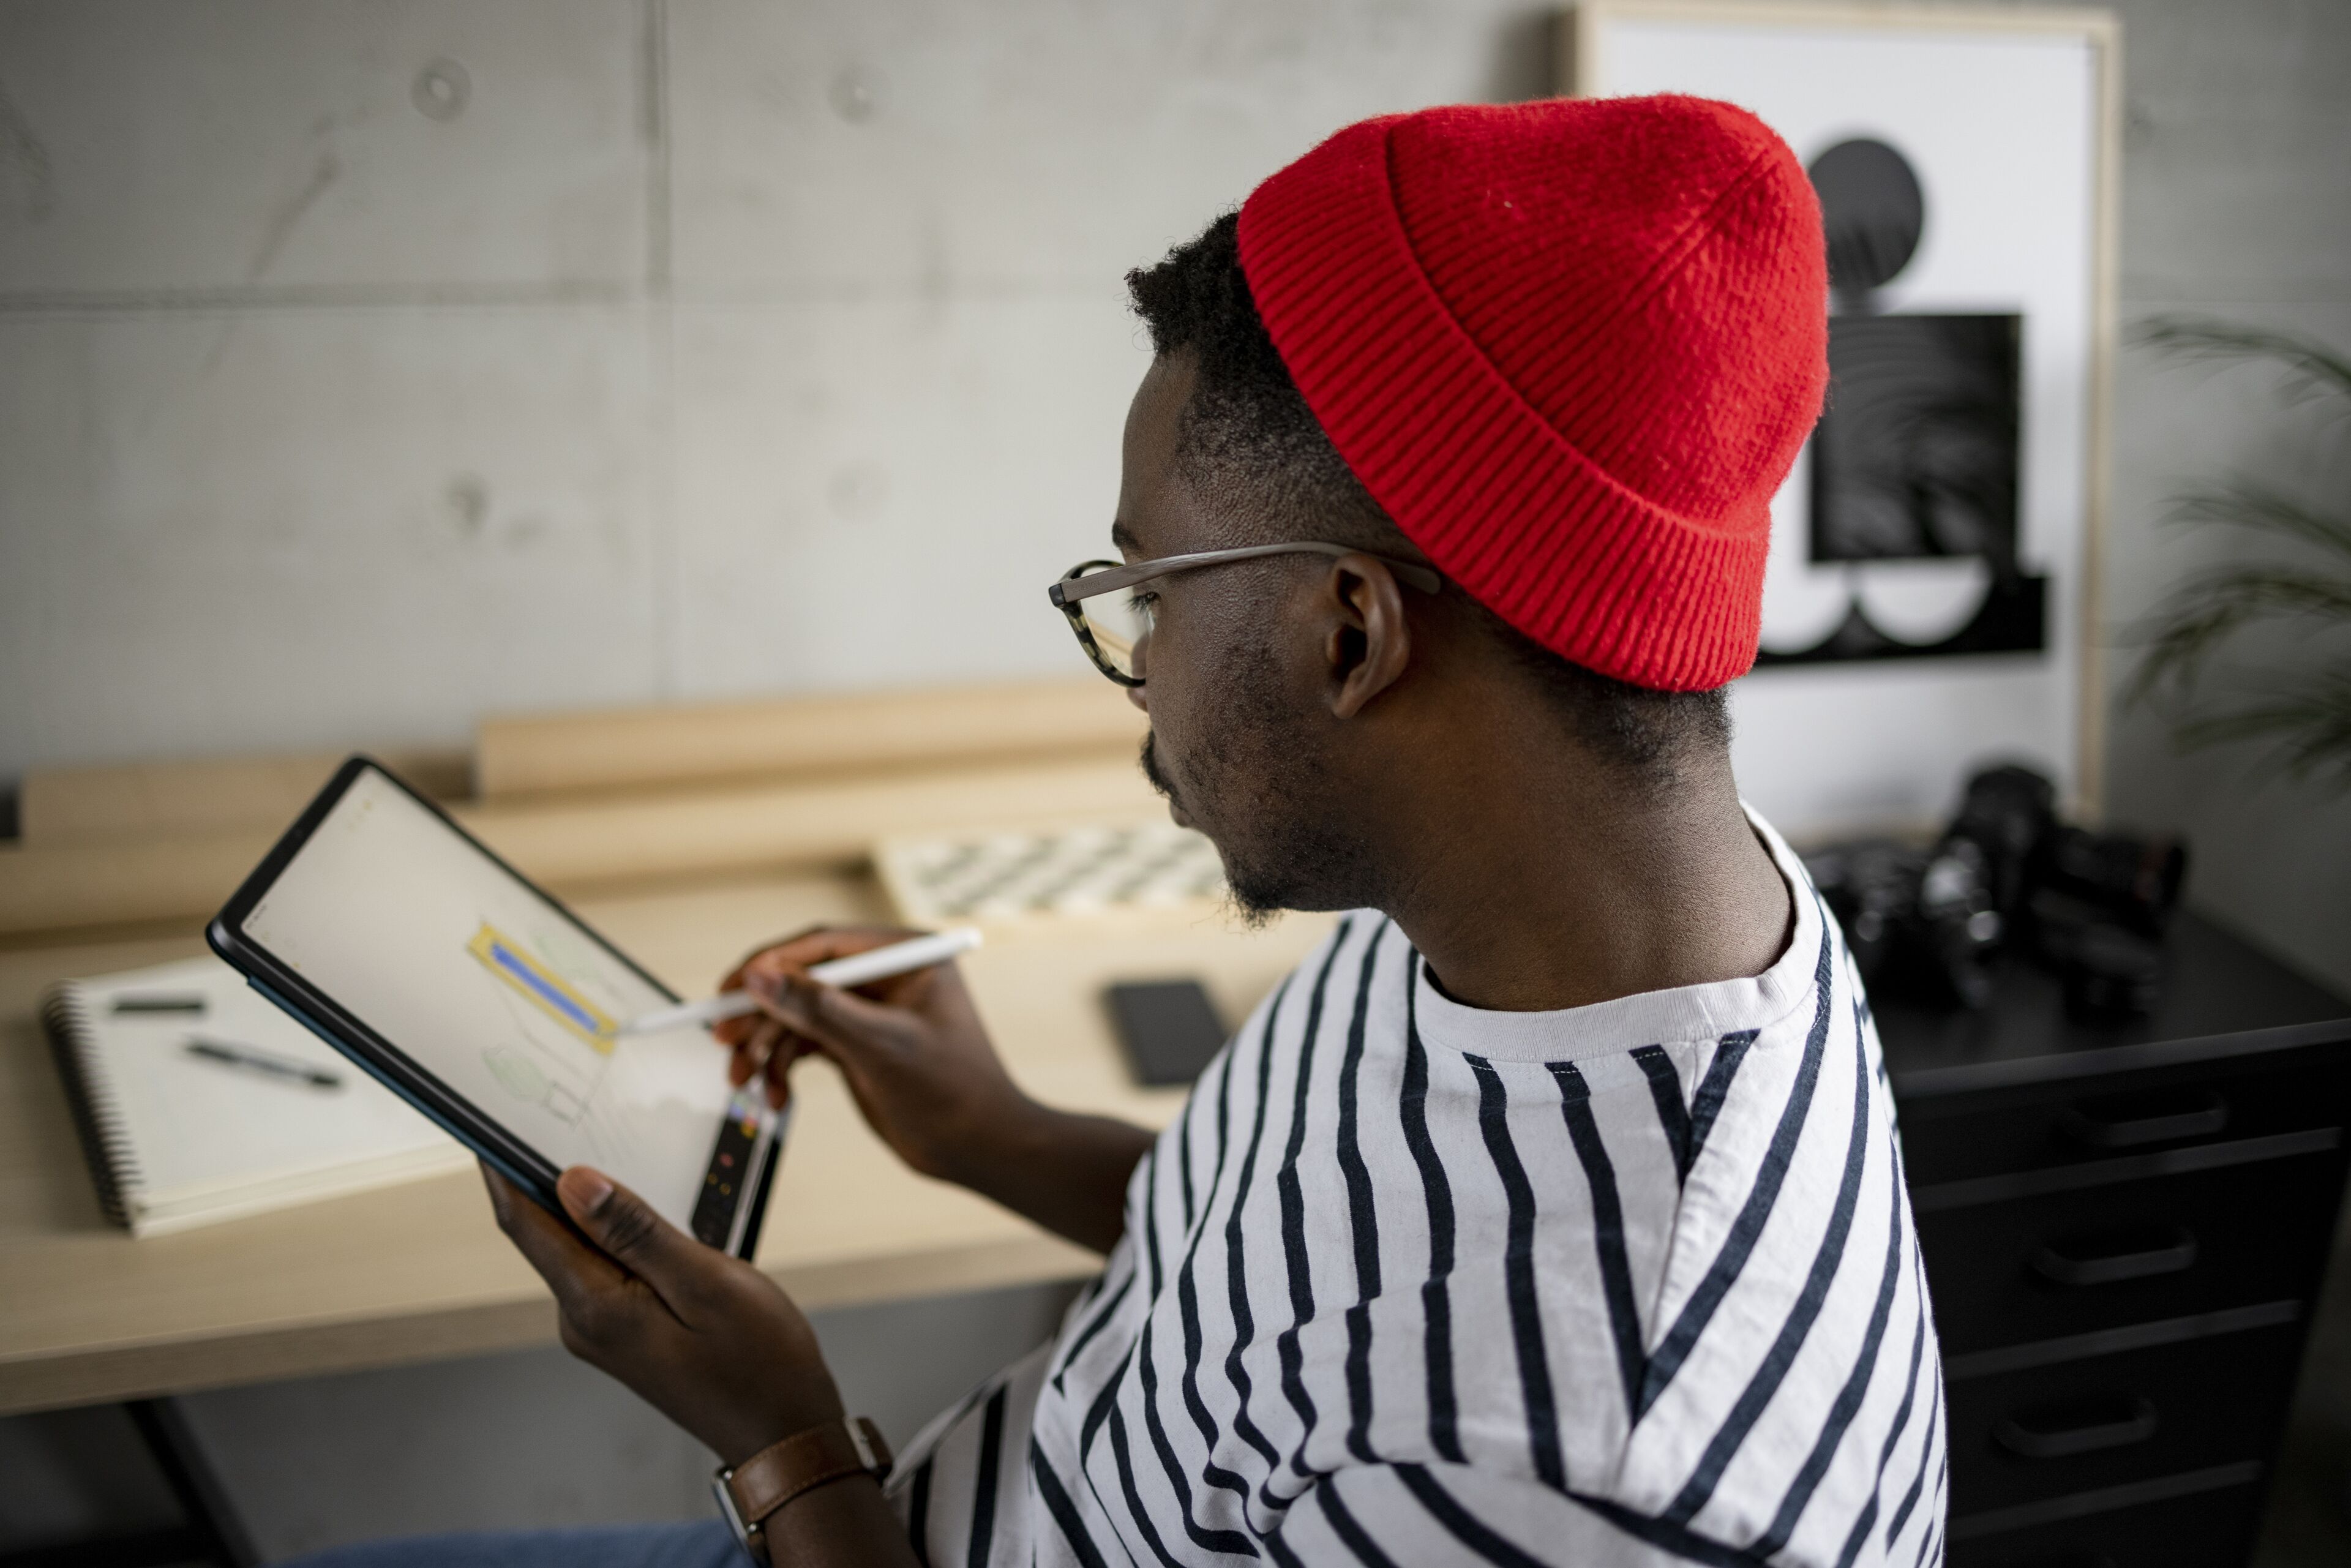 Un homme concentré avec un bonnet rouge et une chemise rayée utilise un stylet sur une tablette numérique dans un espace de travail moderne.

